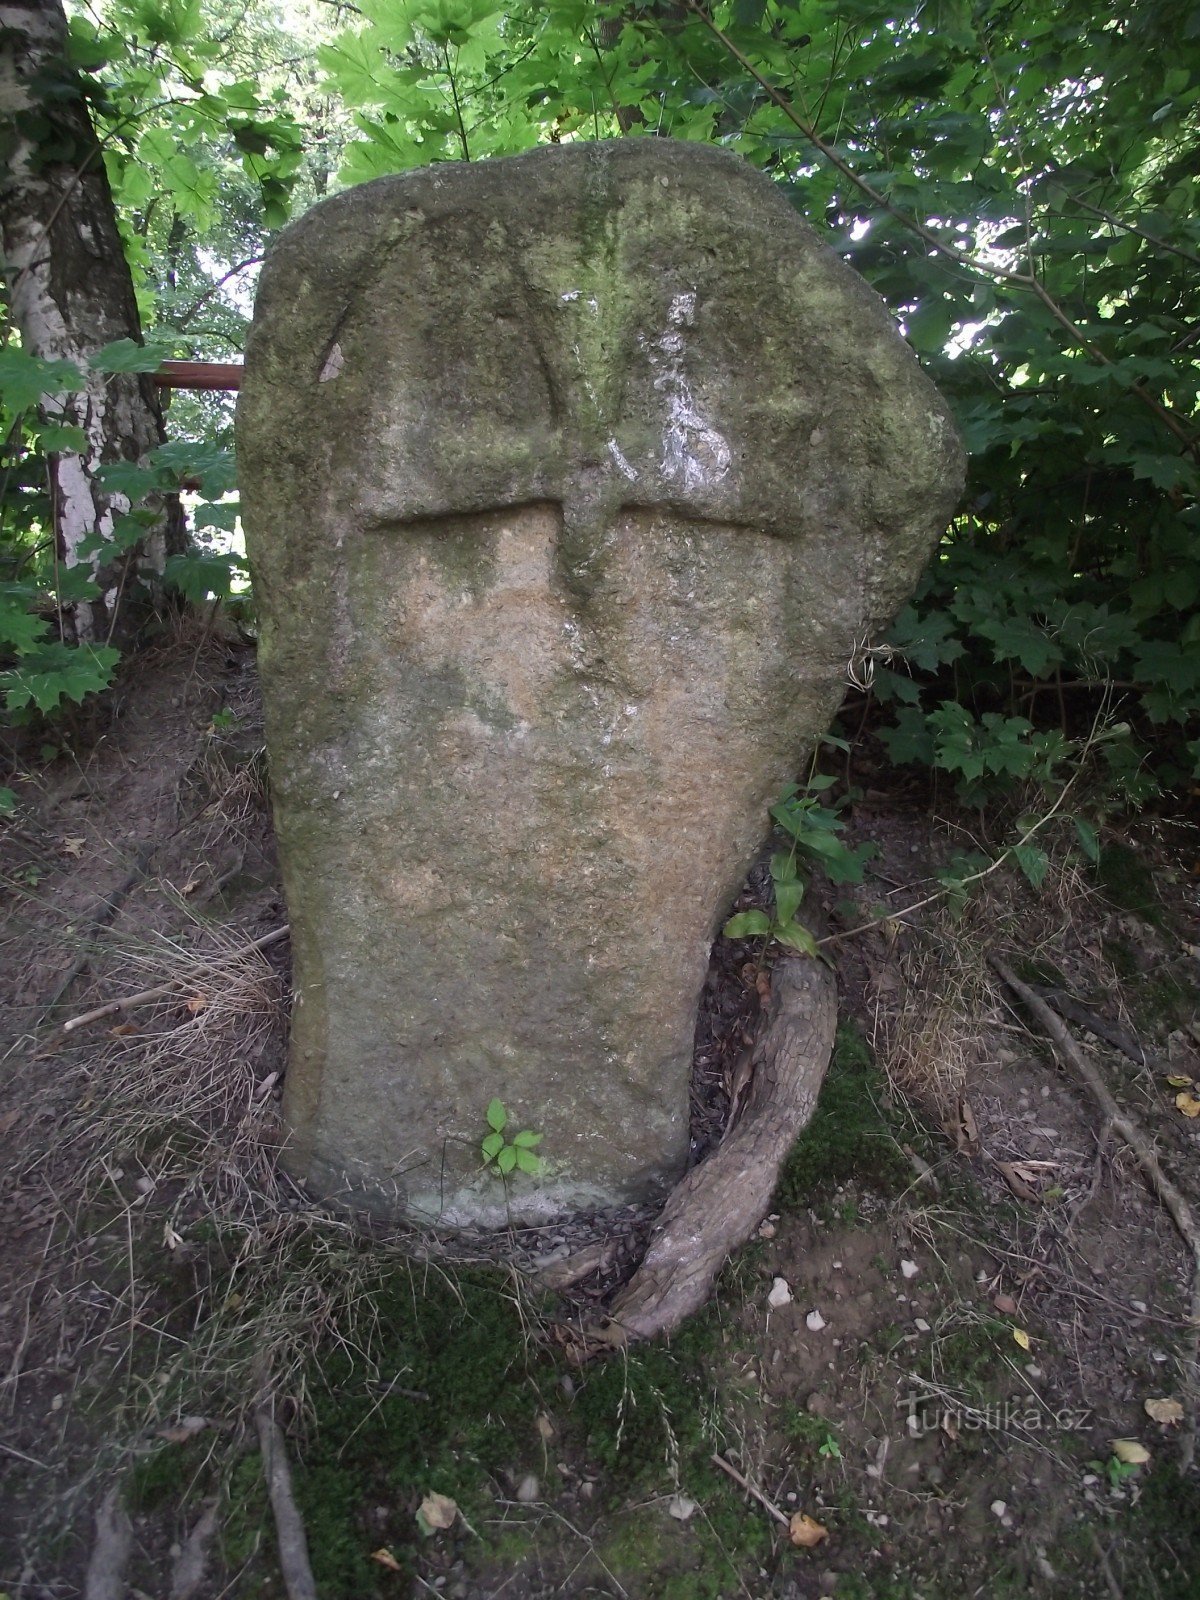 Jablonné nad Orlicí - križ pomirenja (križni kamen)